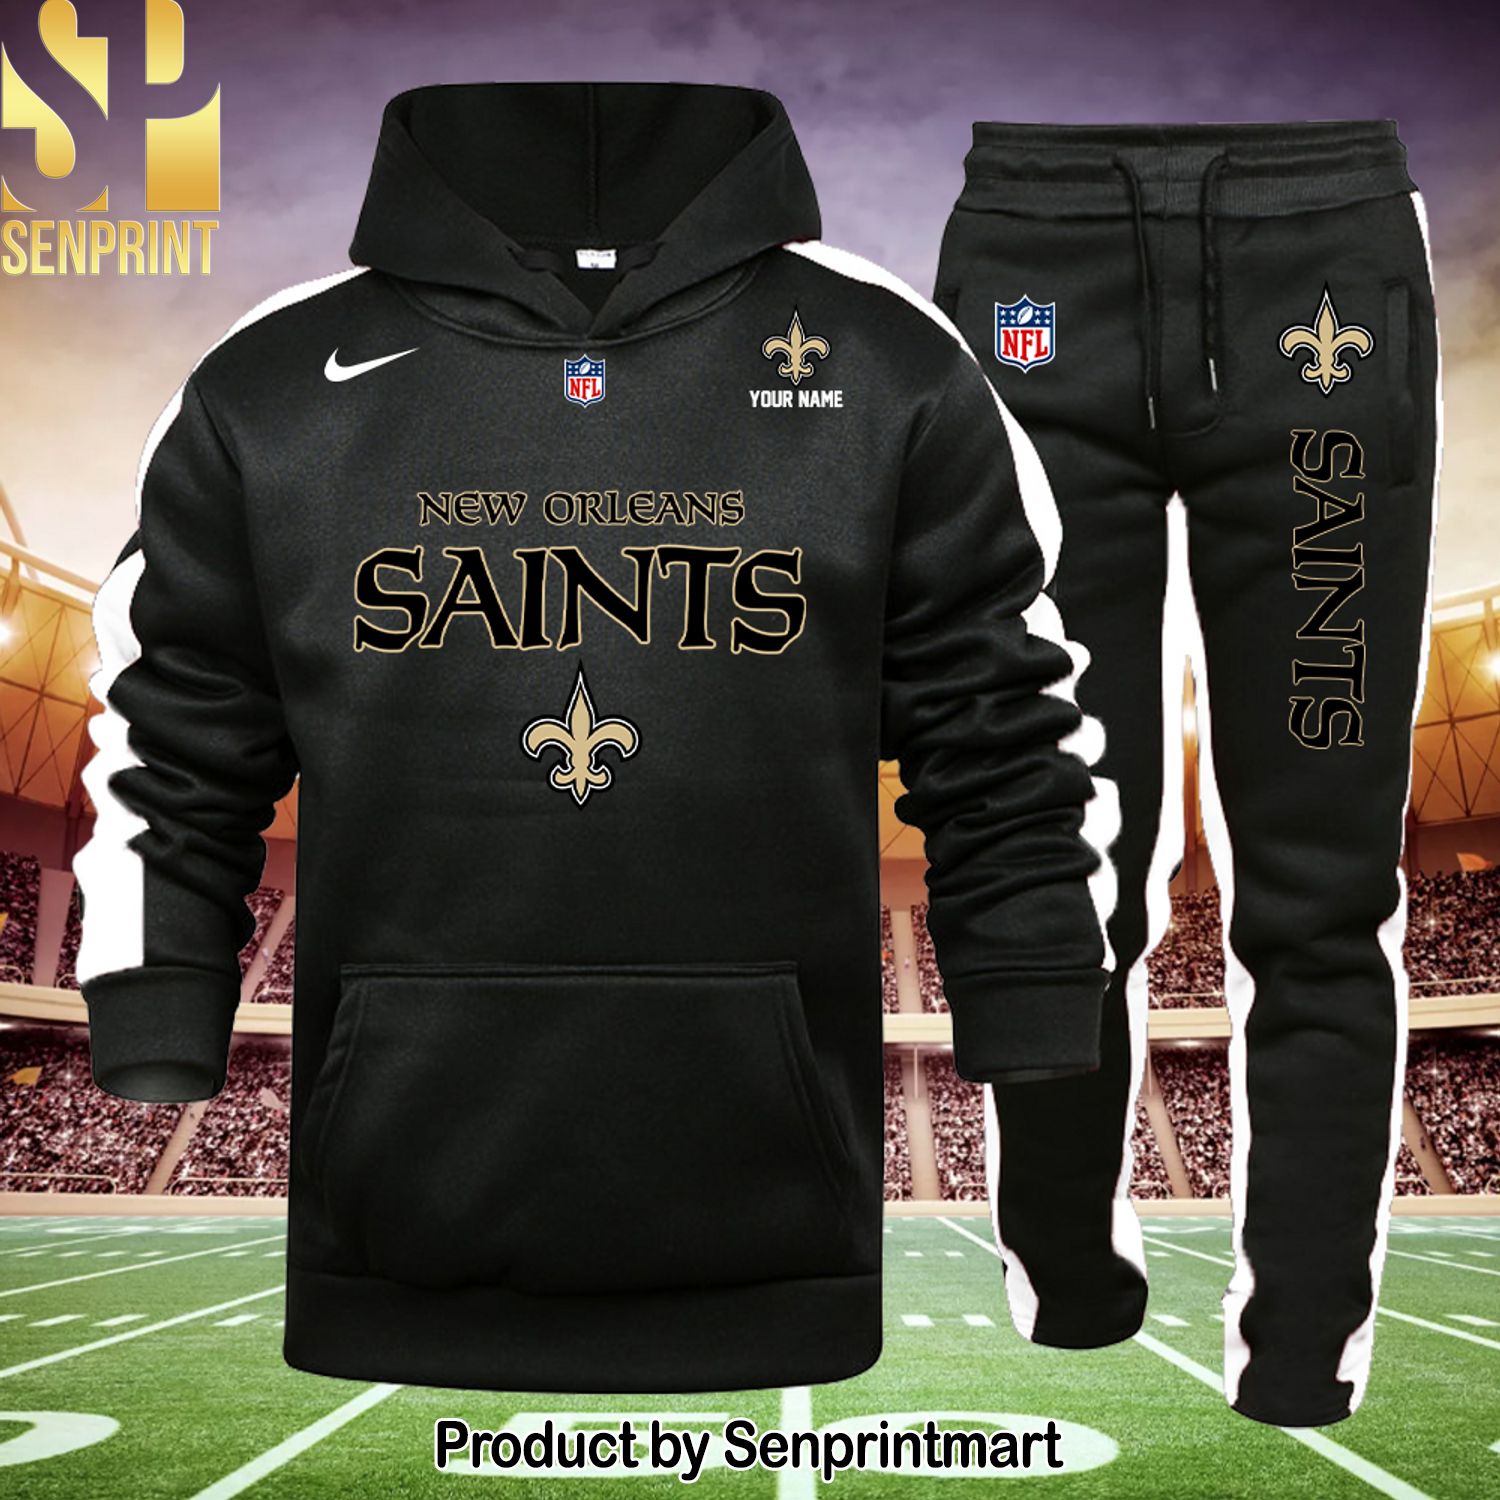 NFL New Orleans Saints Classic Full Print Shirt and Sweatpants